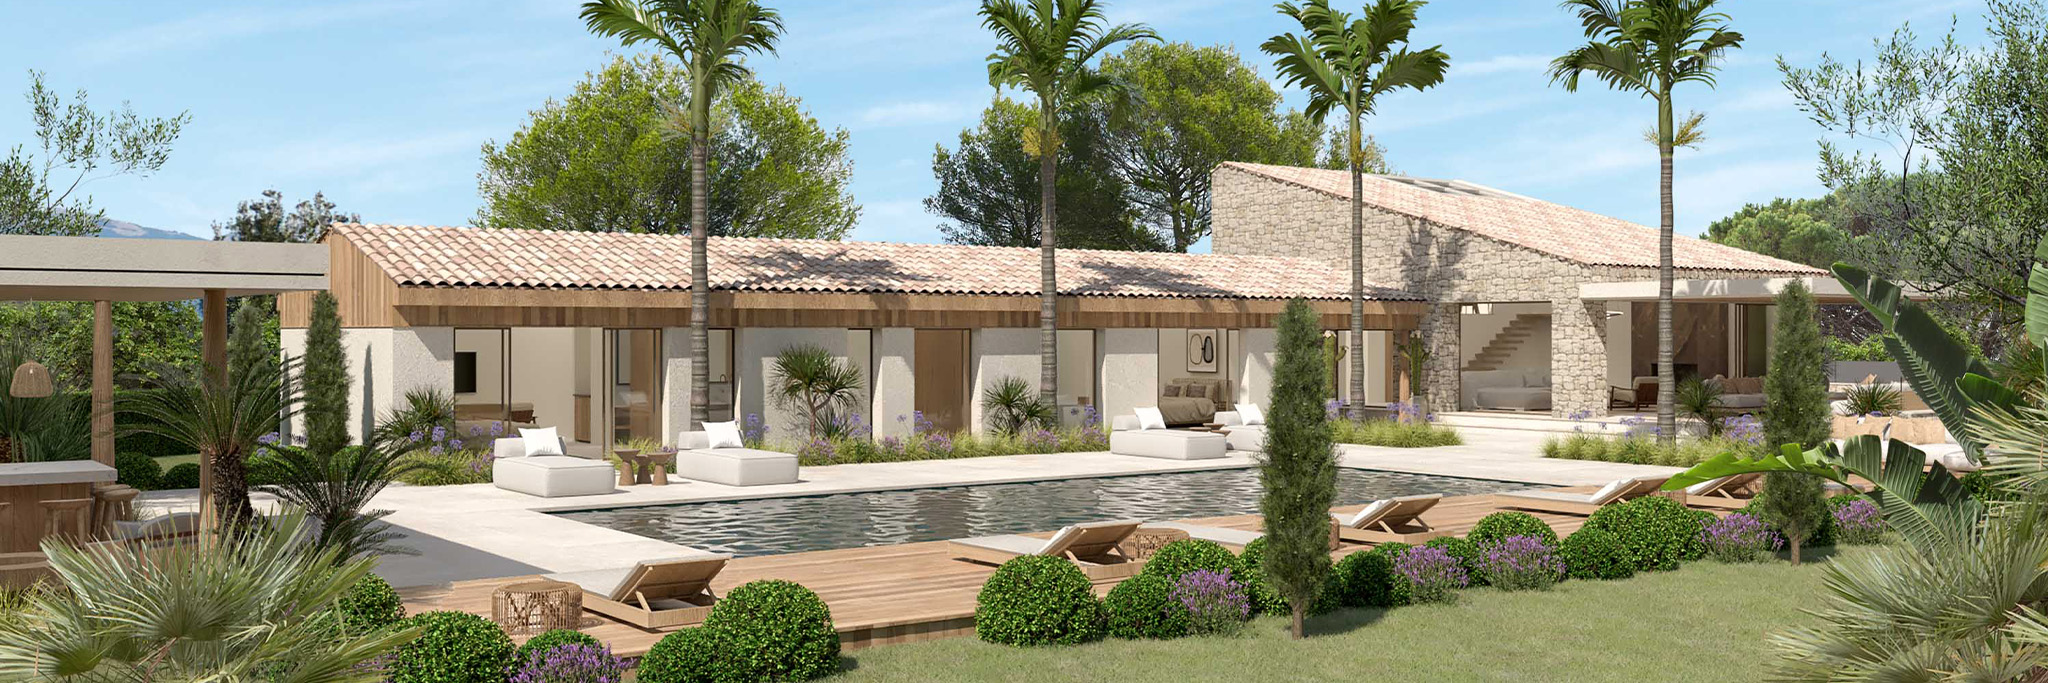 Villa modern d'architecte a inspiration provencale dans la region de Cannes.